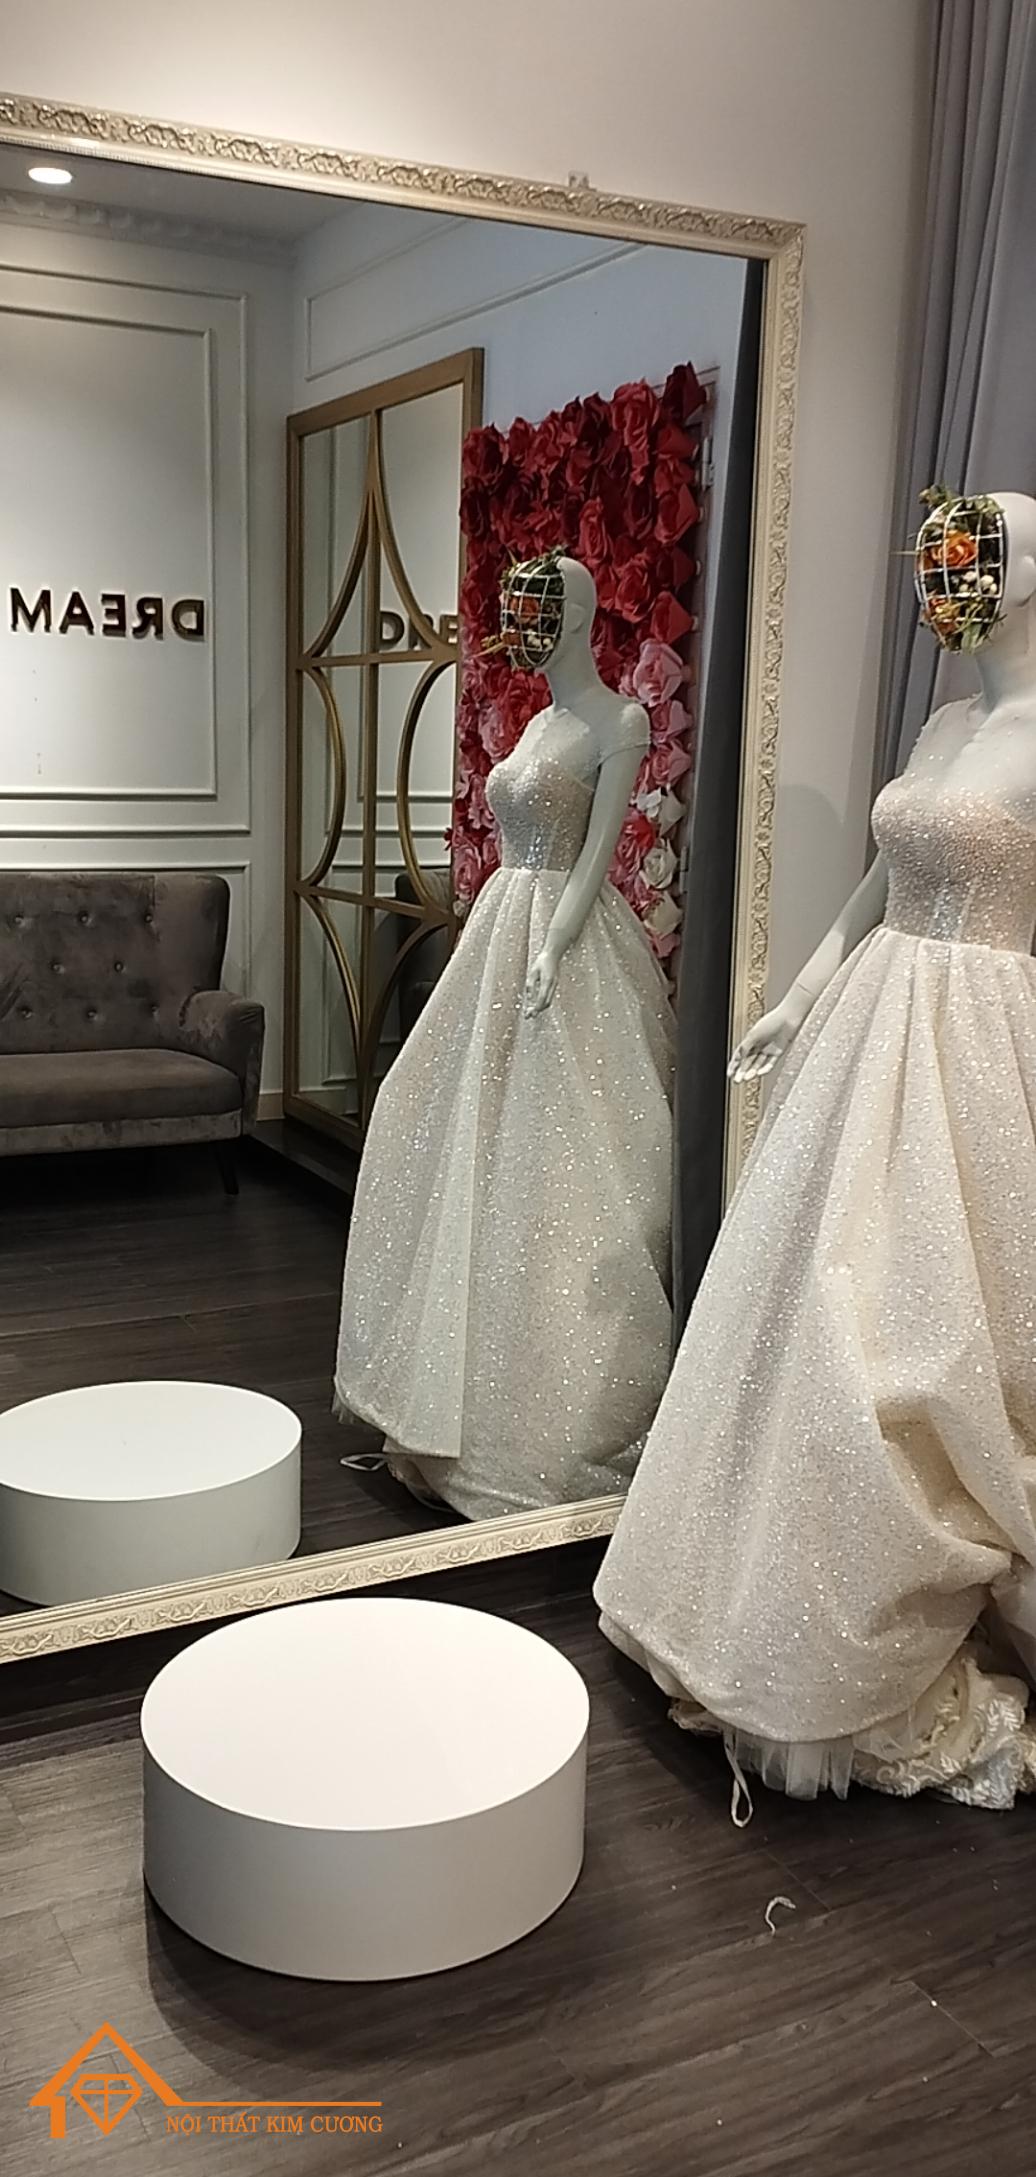 Bục tròn cho cô dâu thử váy cưới  Hàng sơn 2k trắng bóng không xuống màu  nhé các anhchị Studio  Nhận đặt hàng thiết kế theo yêu cầu Web 